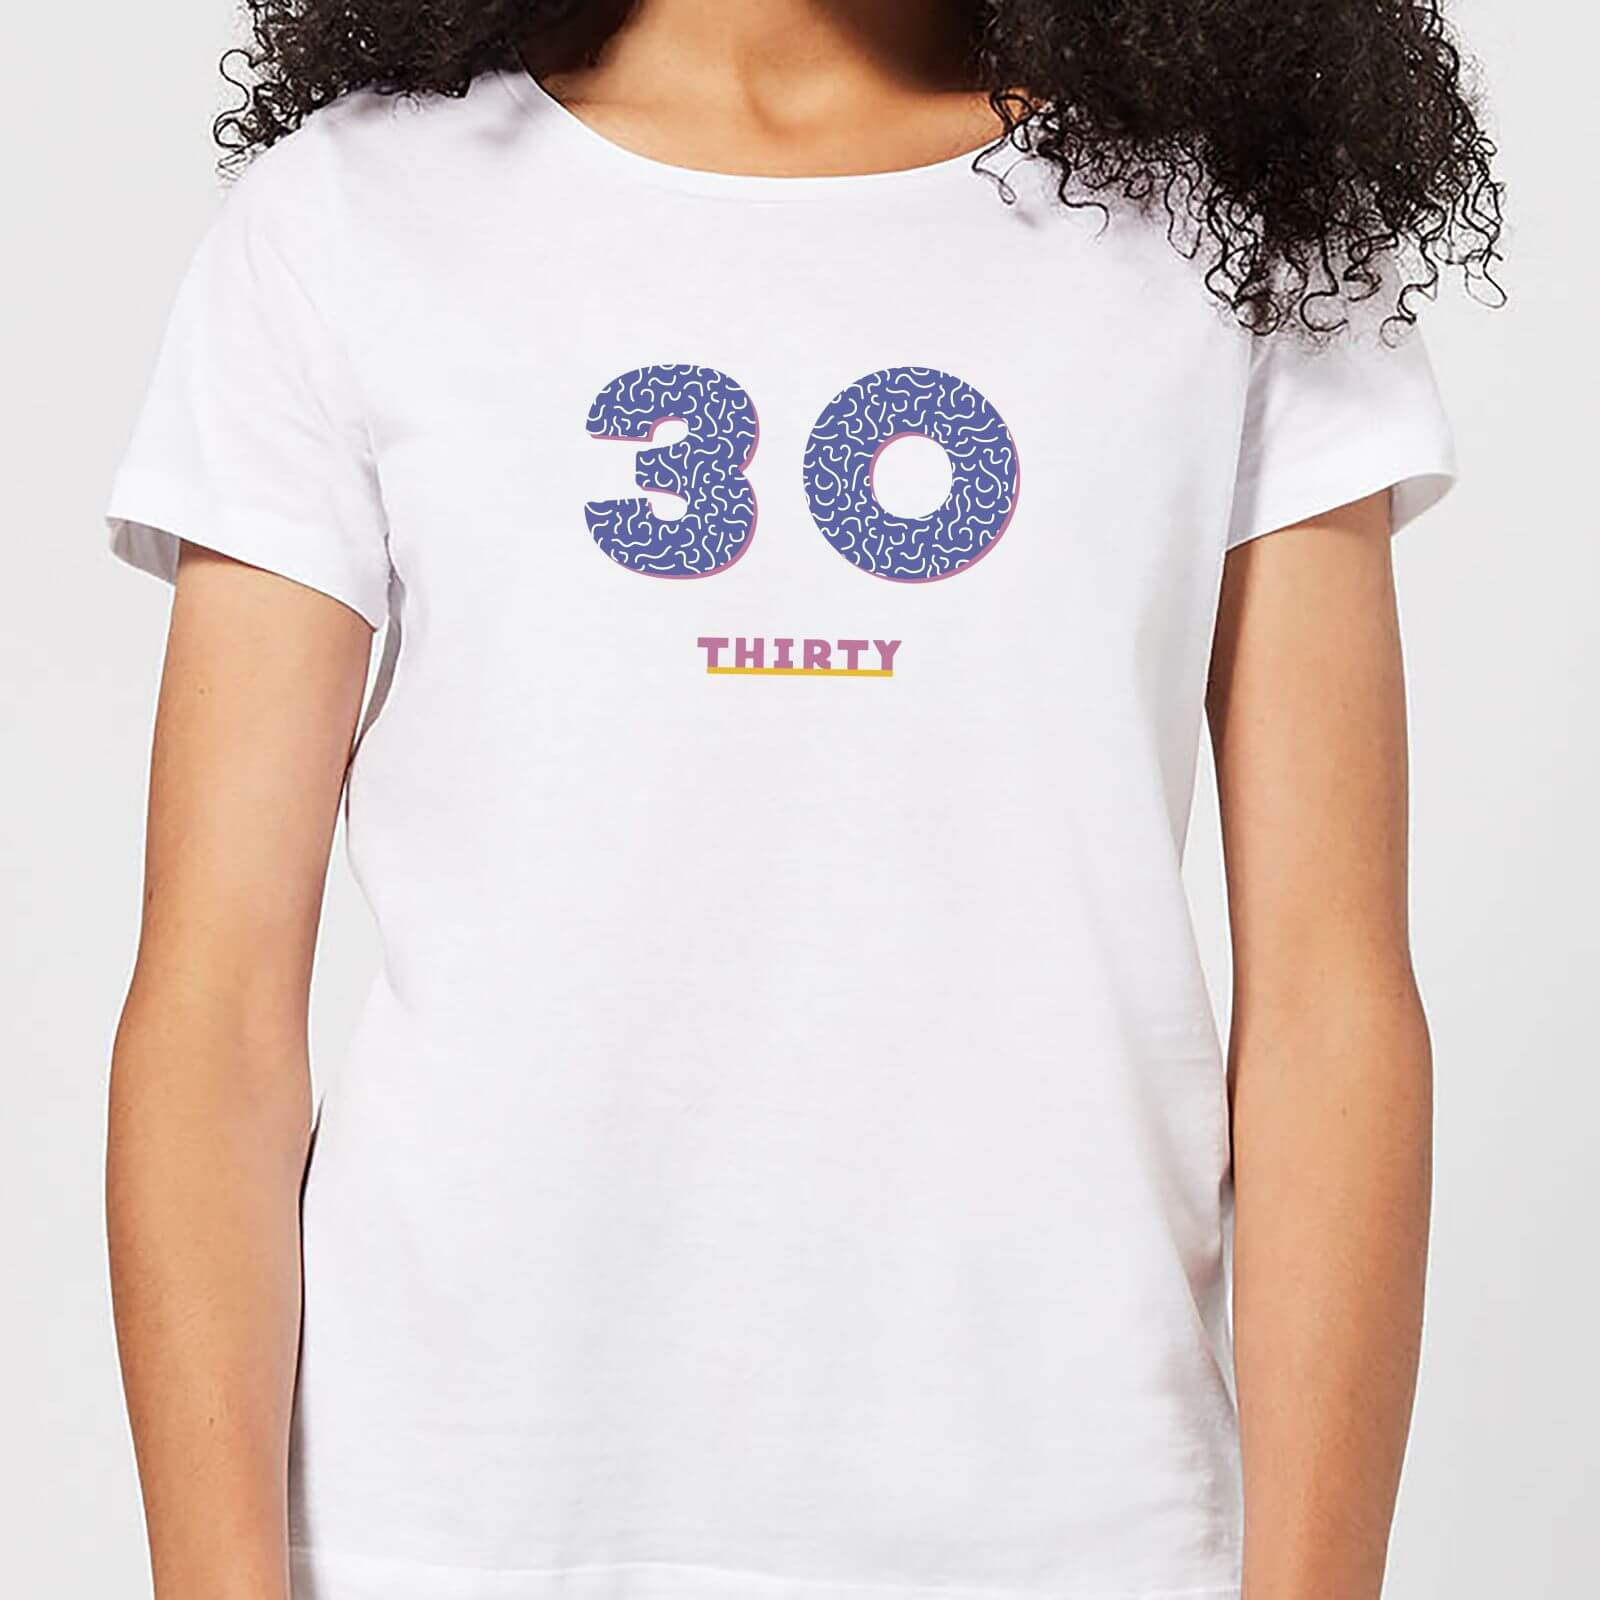 Thirty Women's T-Shirt - White - XS - White